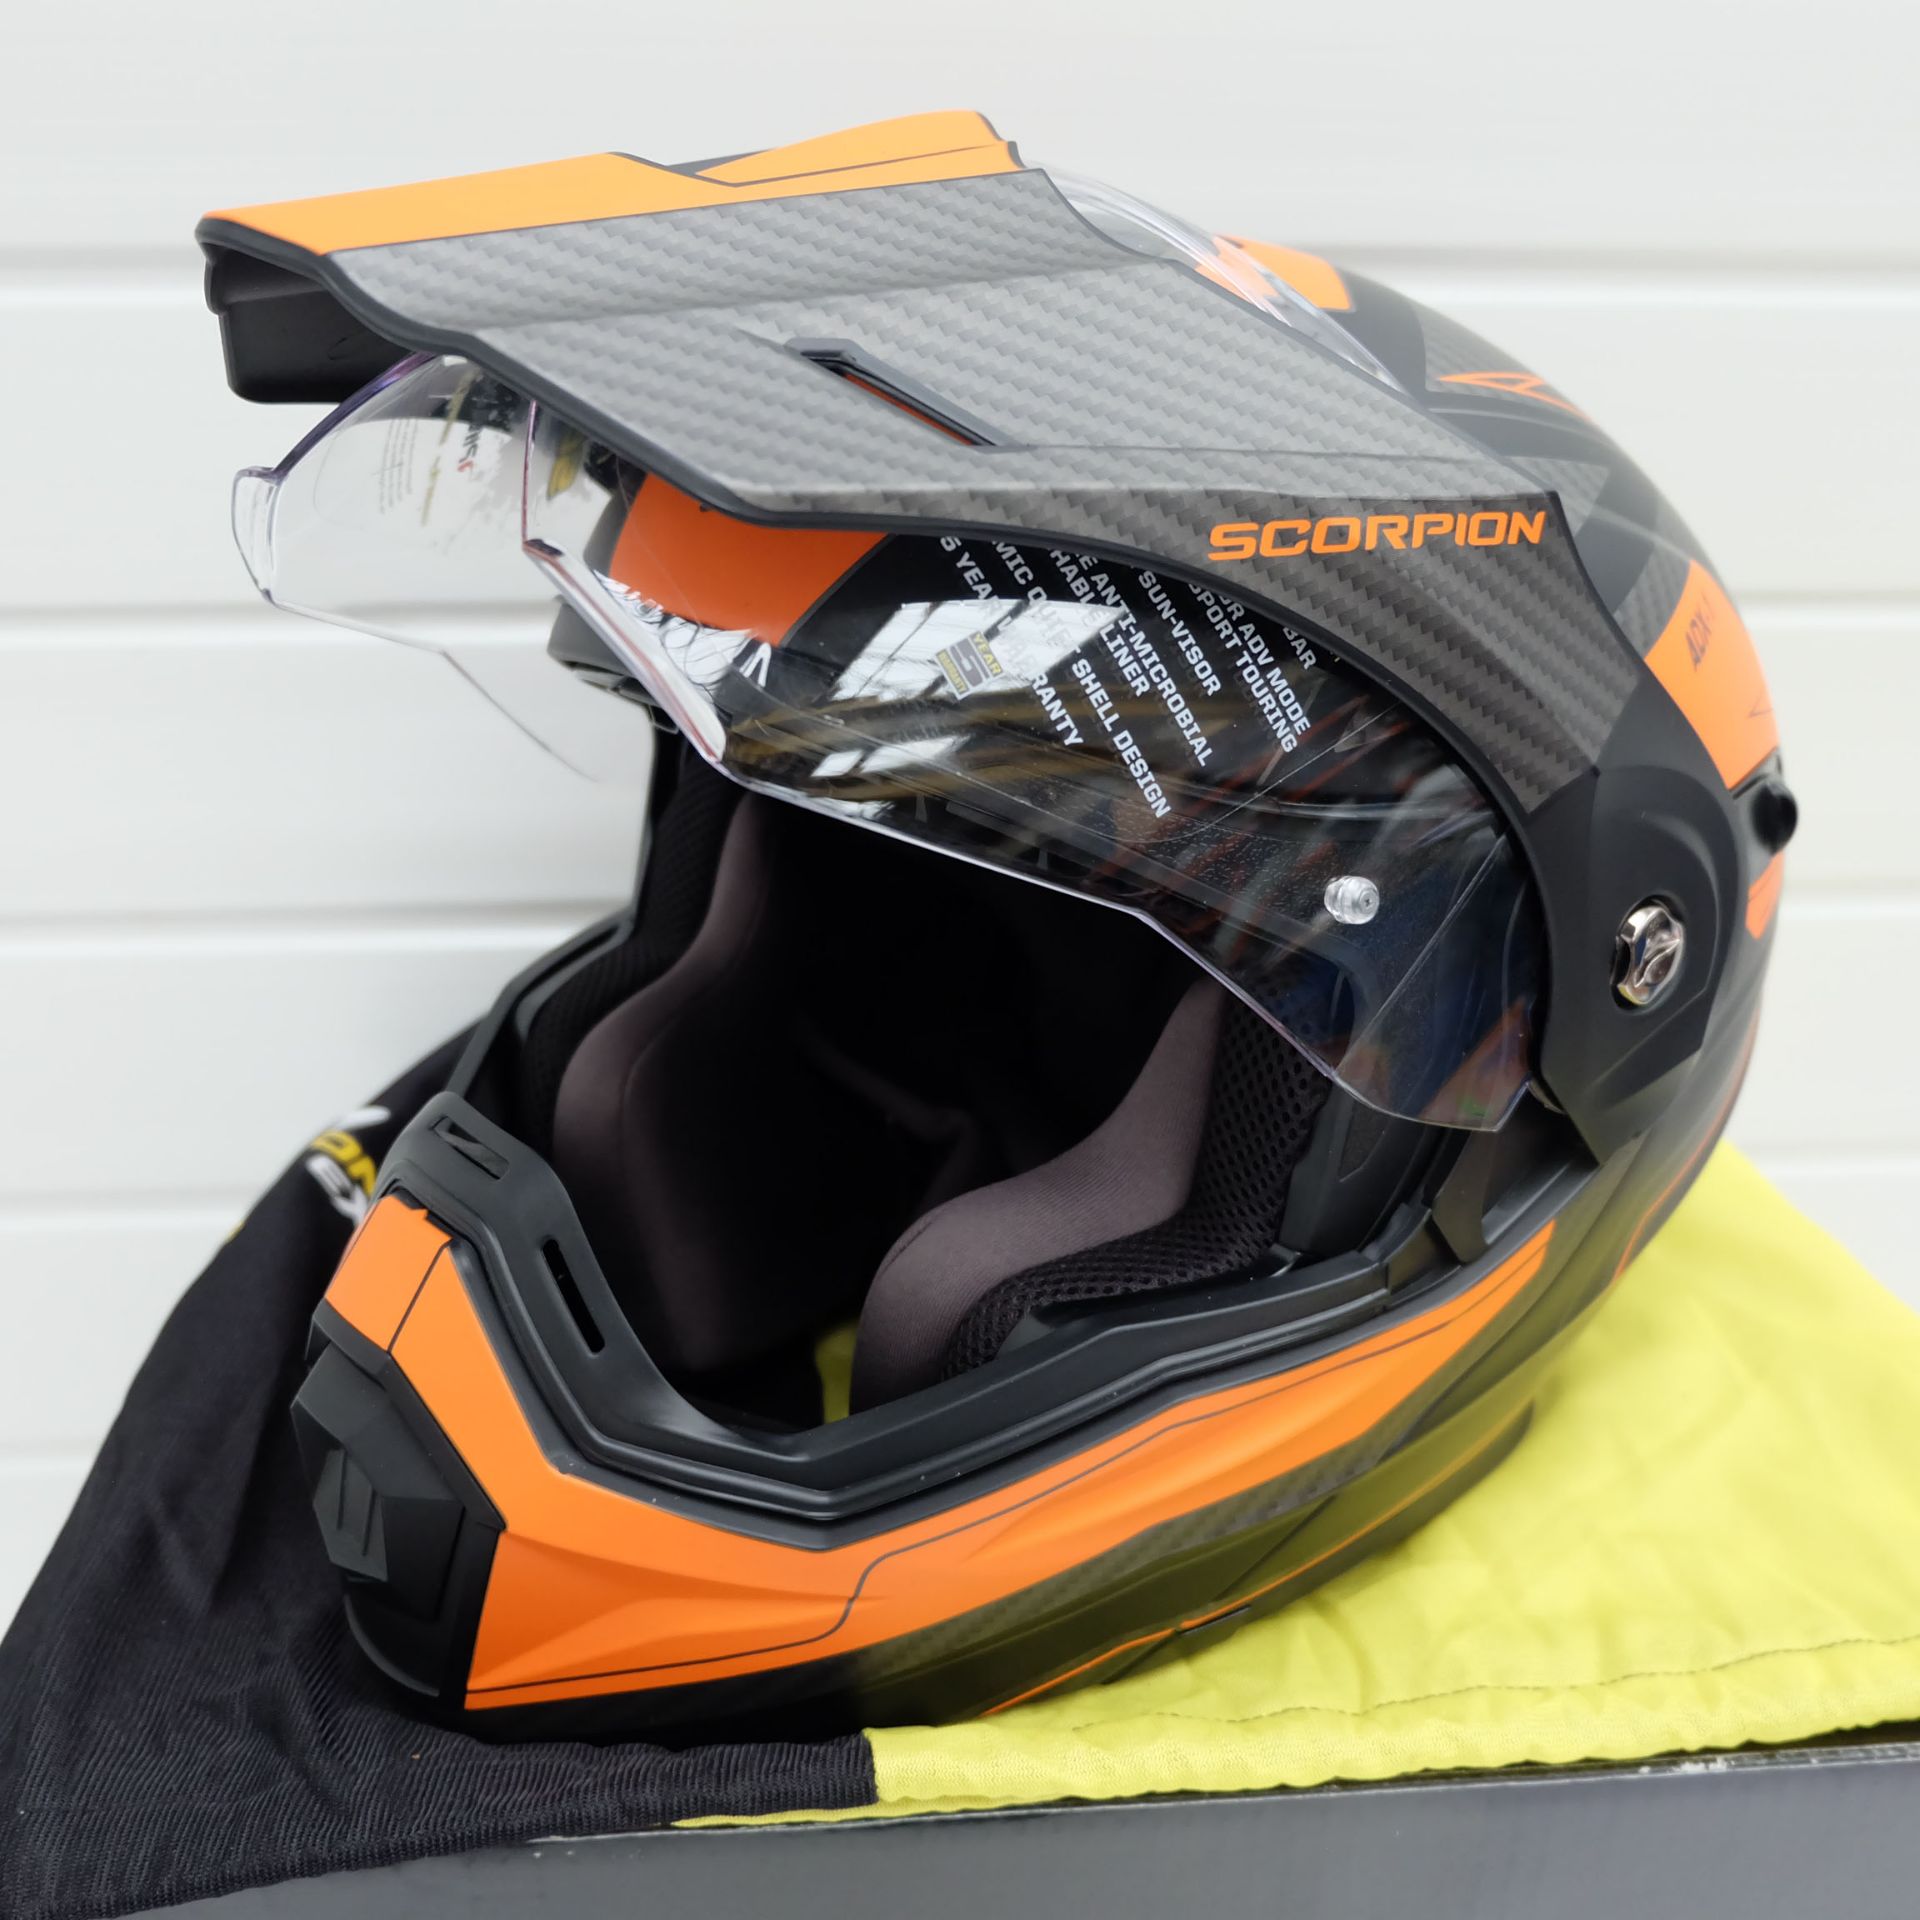 Scorpion Exo ADX-1 Adventure Helmet Tucson Black/Orange Size Small - Image 5 of 12